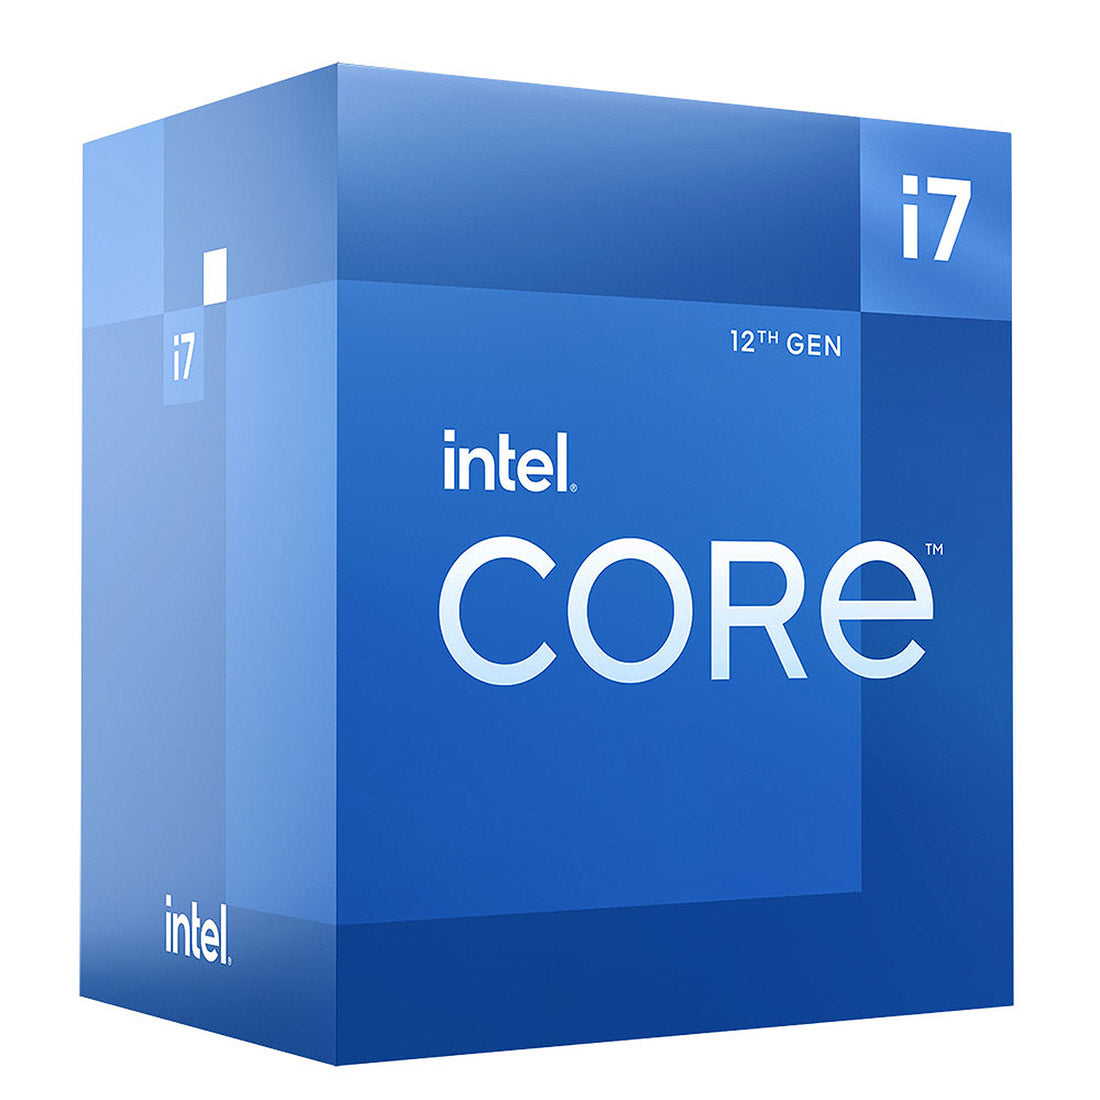 Intel Core 12th Gen i7-12700 LGA1700 Desktop Processor 12 Cores up to 4.9GHz 25MB Cache